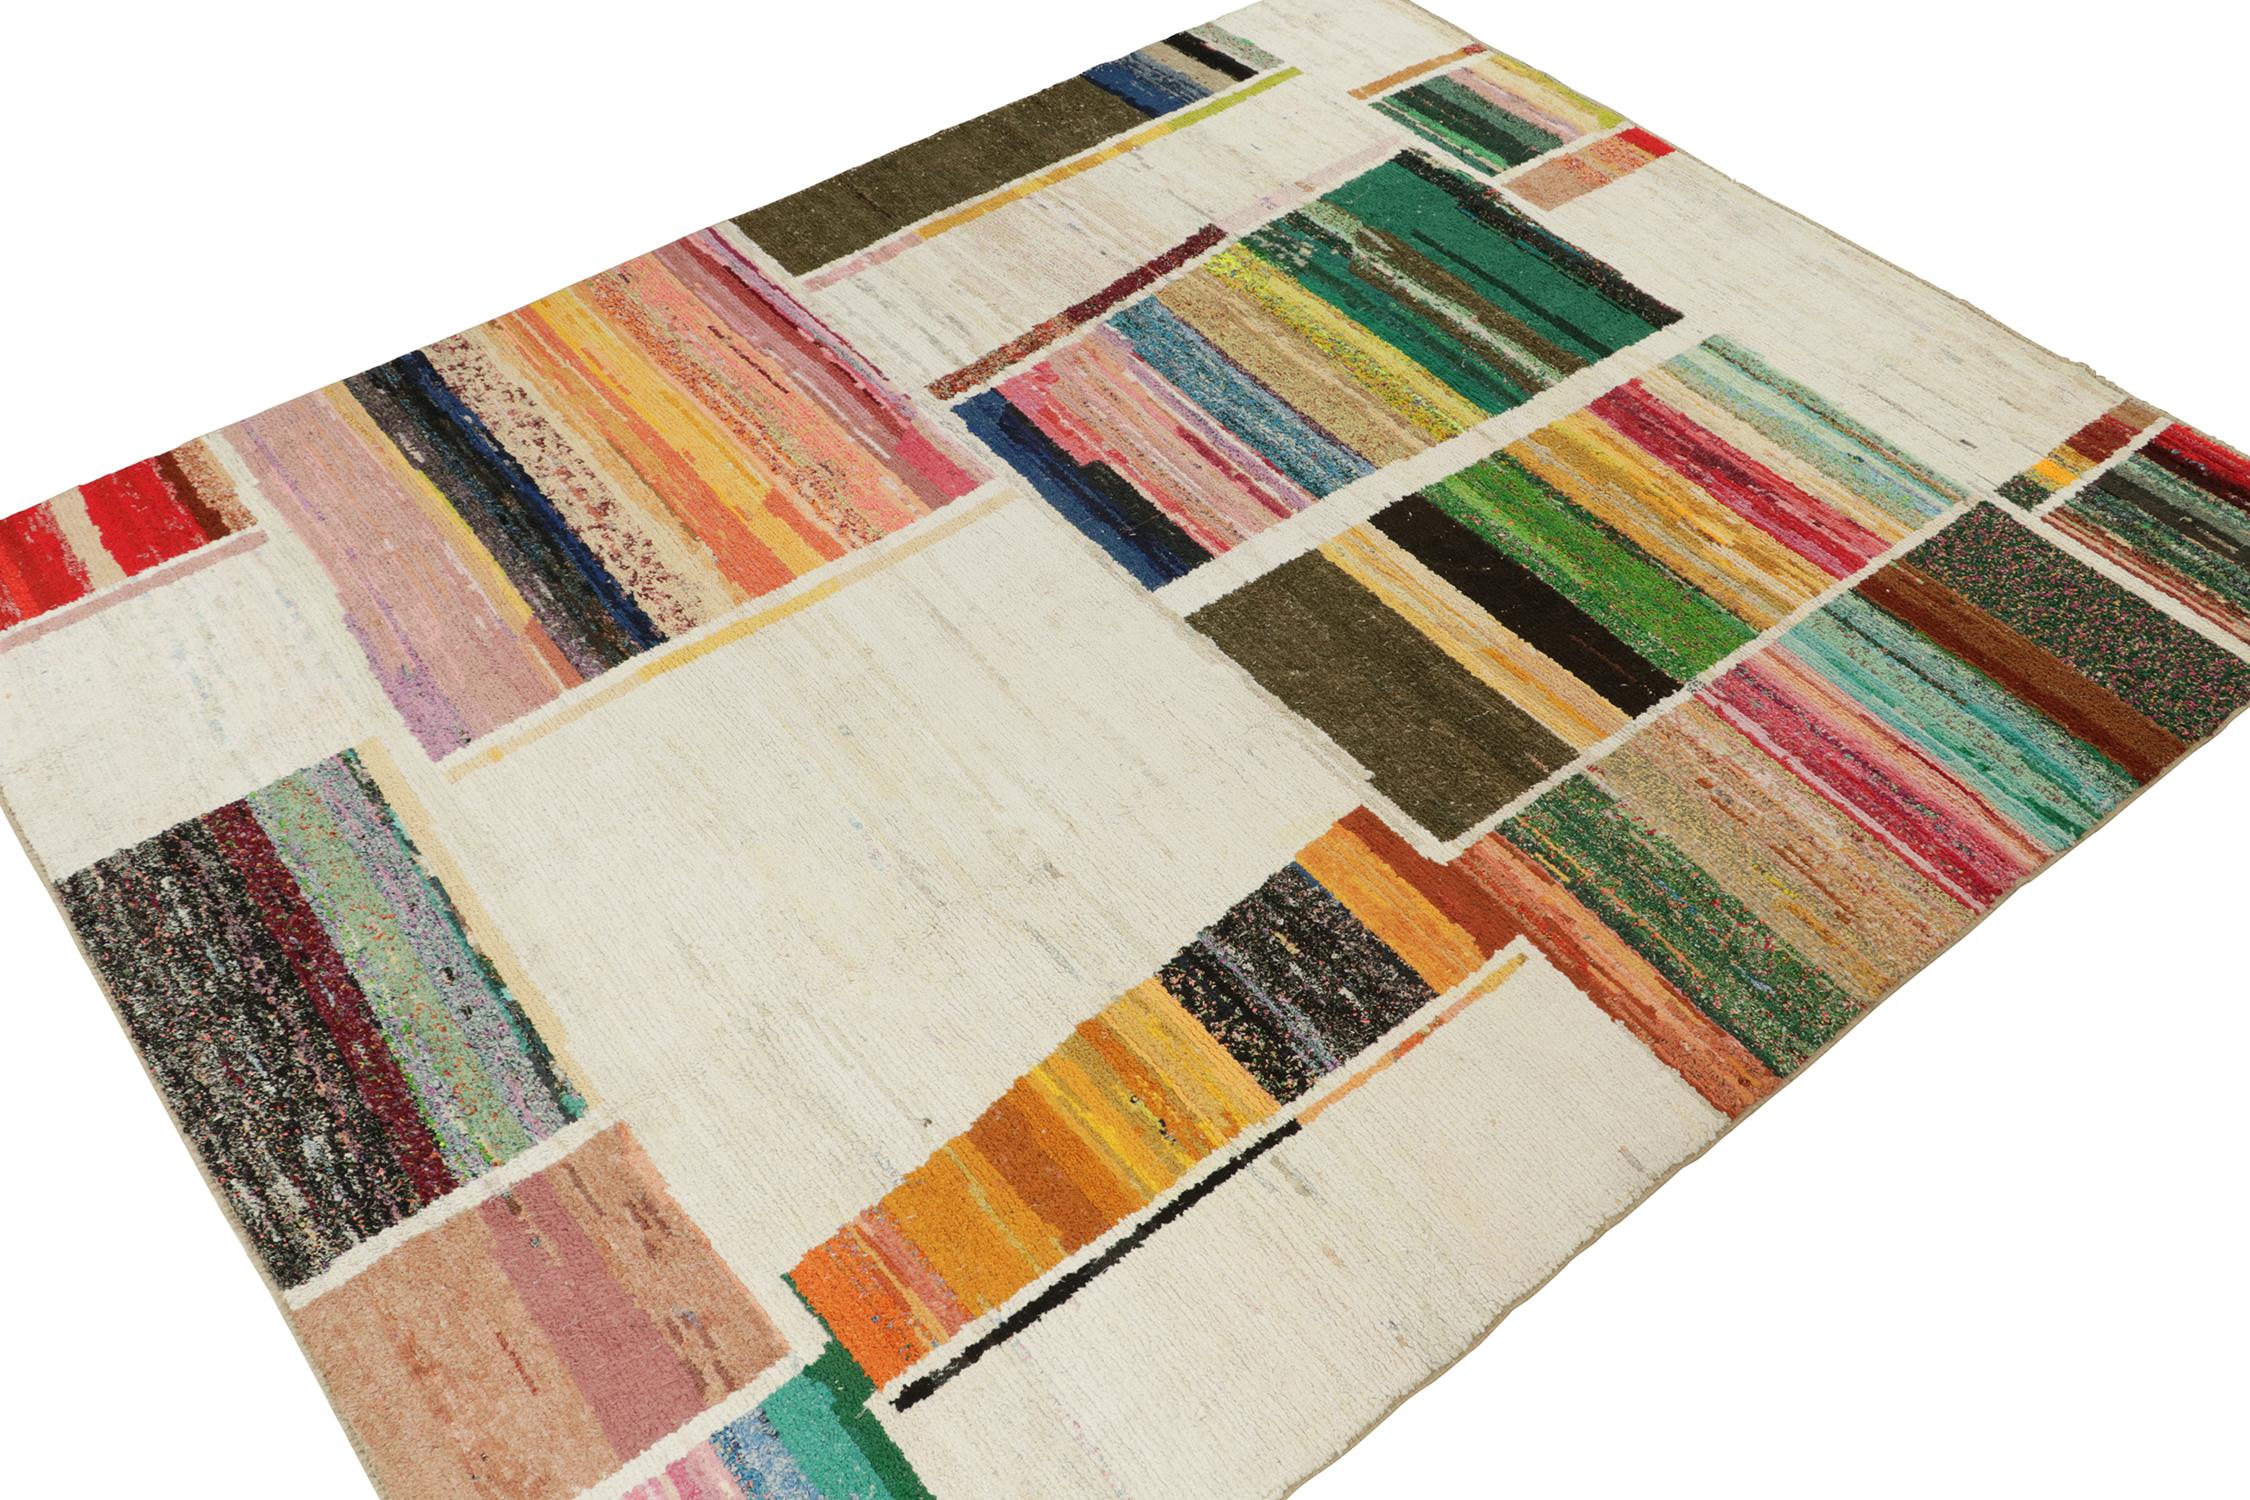 Dieser 10x13 große Teppich ist eine kühne Neuheit in der marokkanischen Teppichkollektion von Rug & Kilim. Er ist aus Wolle handgeknüpft und lehnt sich an die Berbermotive im Boucherouite-Stil an, mit einer lebhaften polychromen Farbgebung.

Weiter